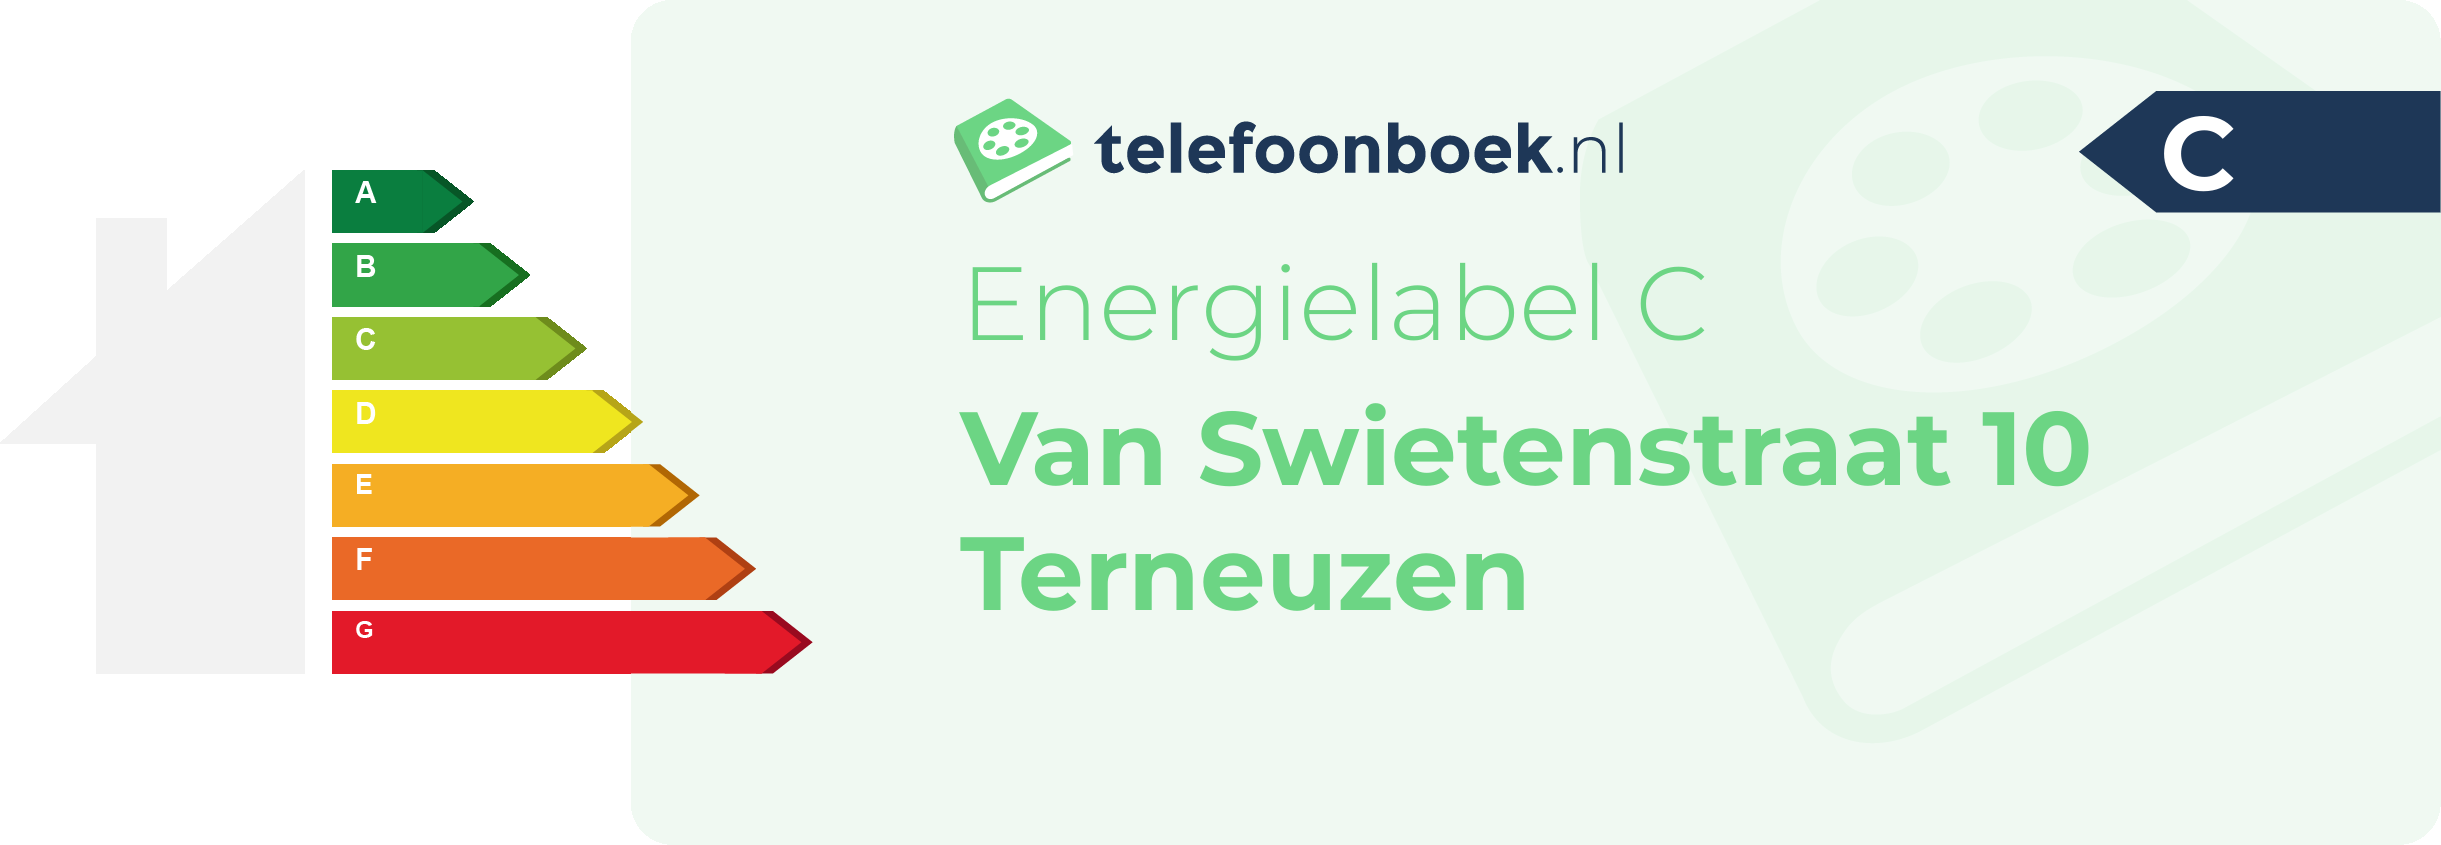 Energielabel Van Swietenstraat 10 Terneuzen